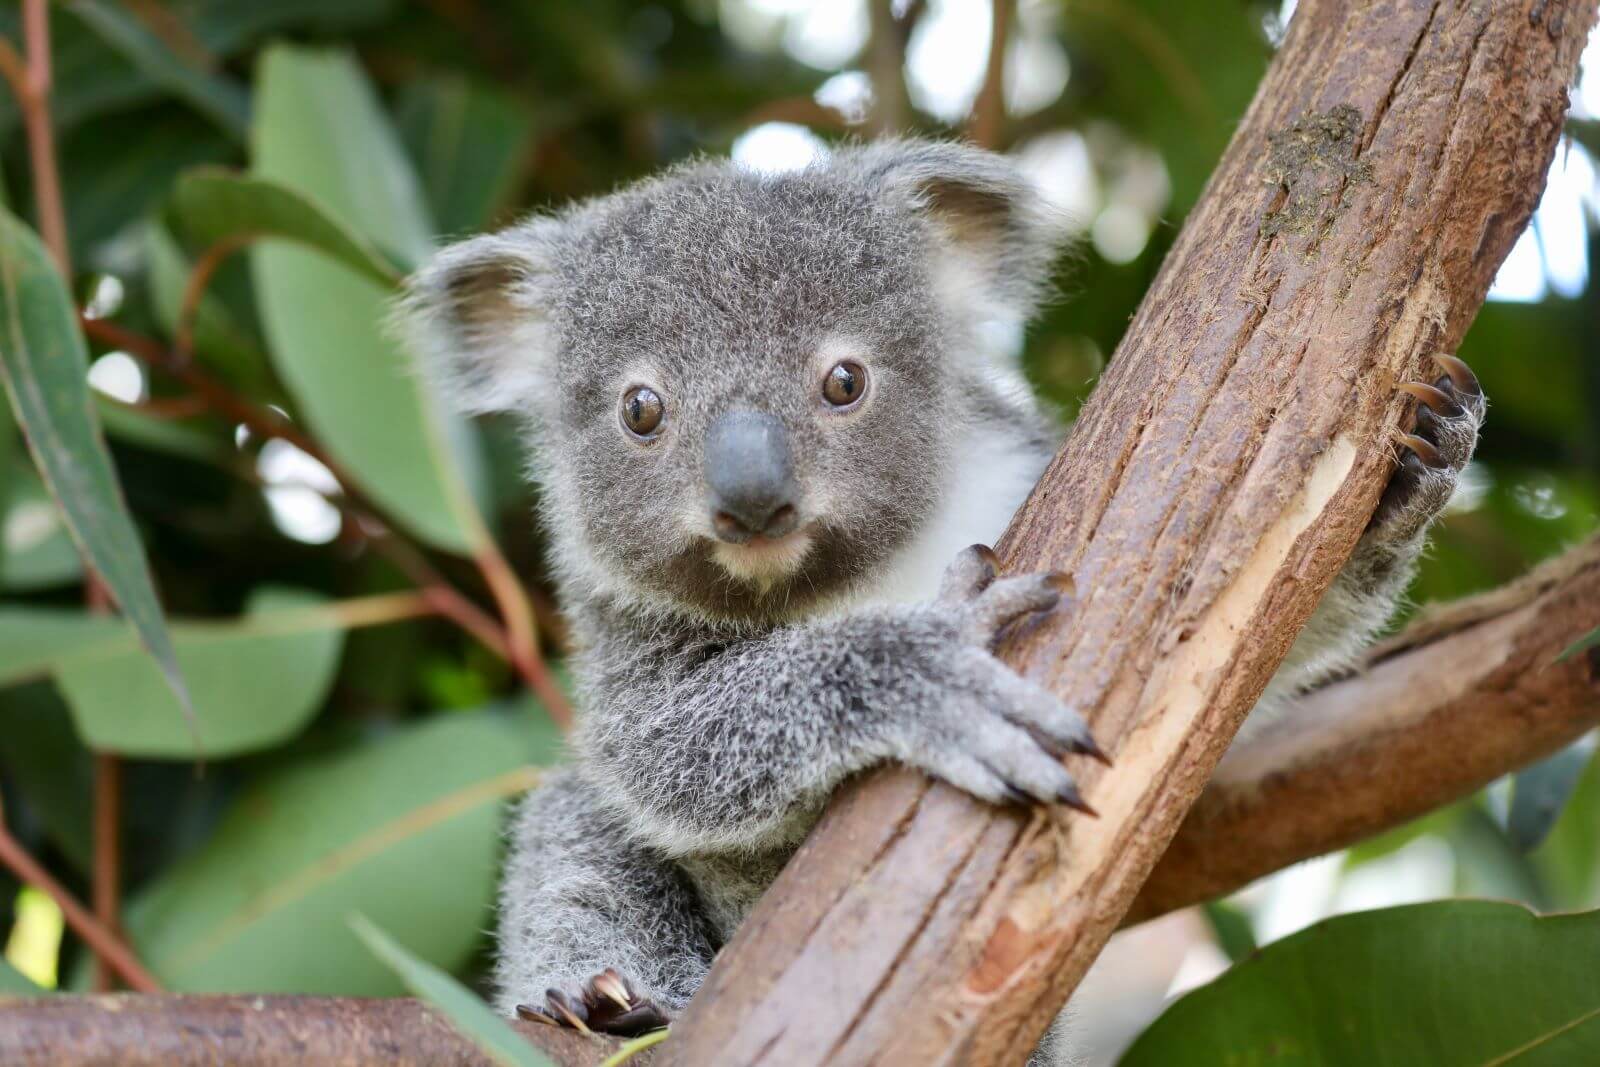 reptile park koala joey in tree